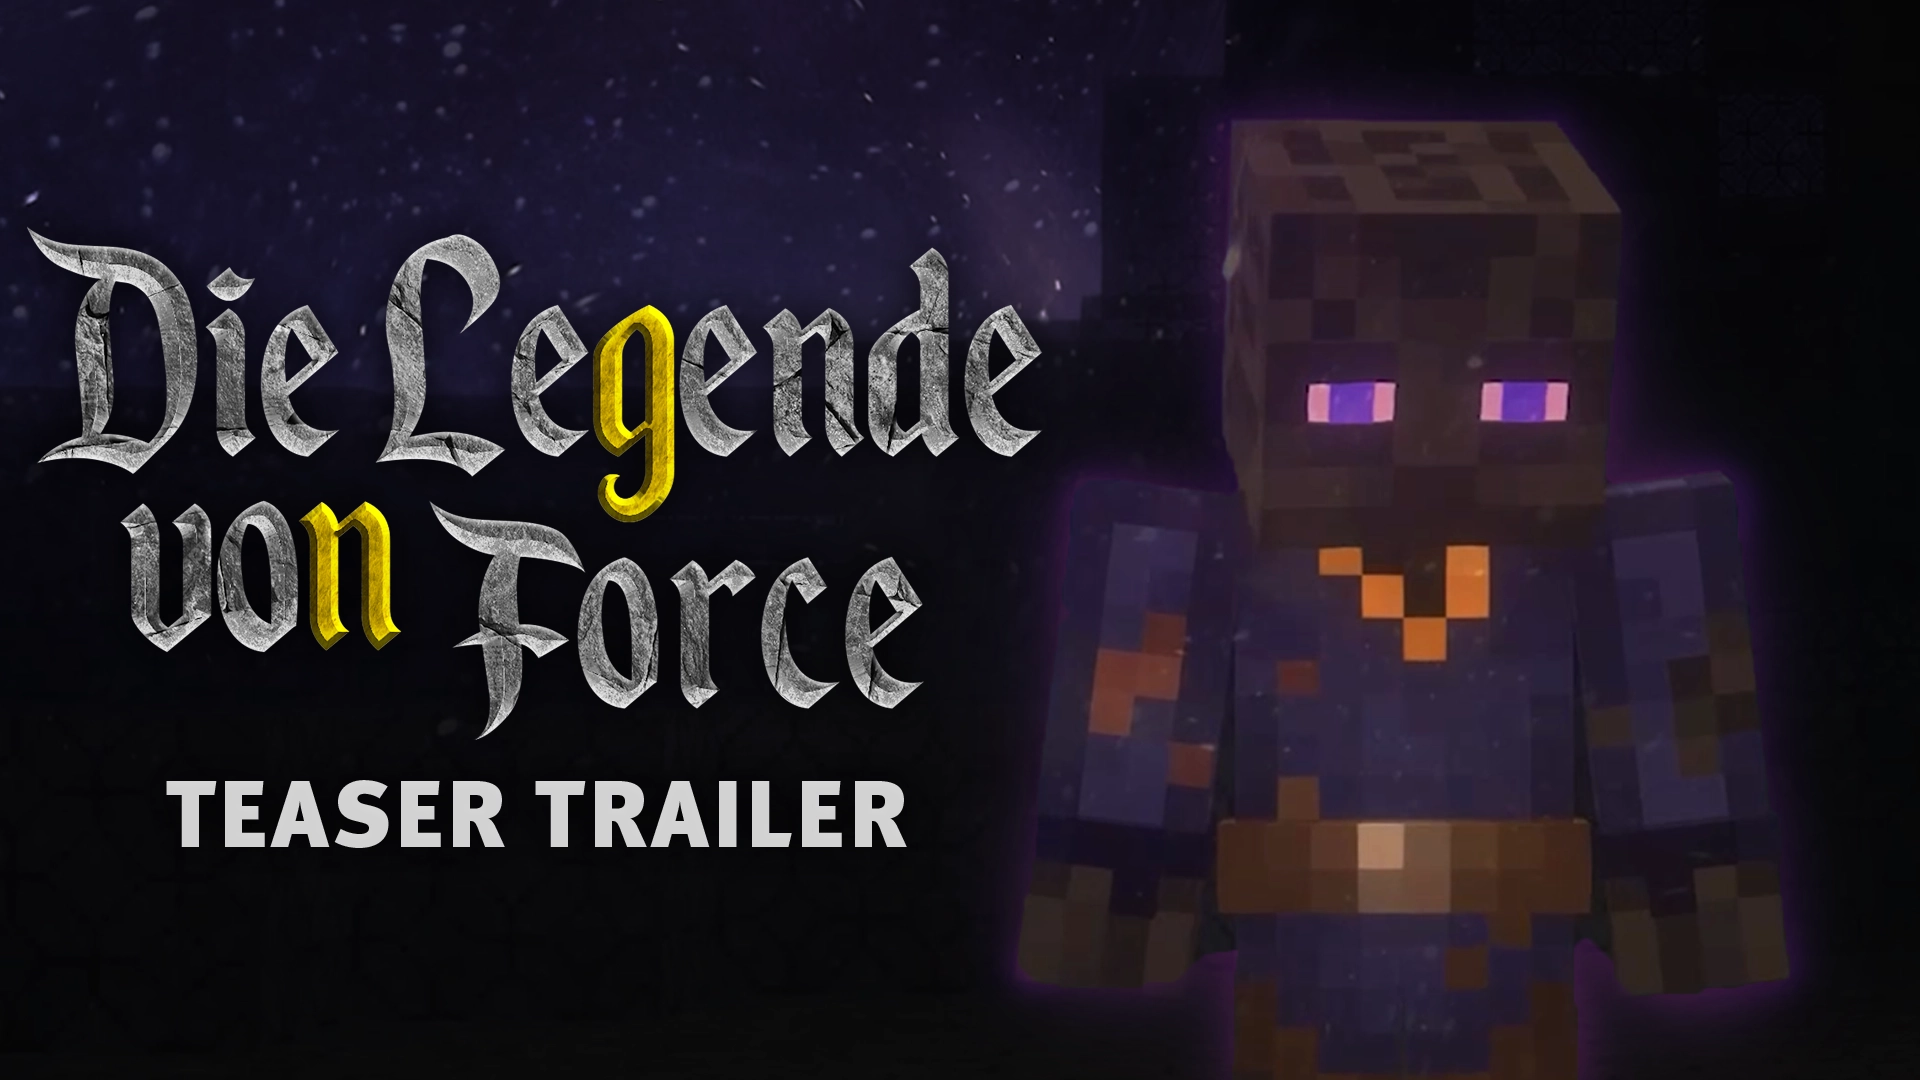 Die Legende von Force Teaser Trailer Teaser